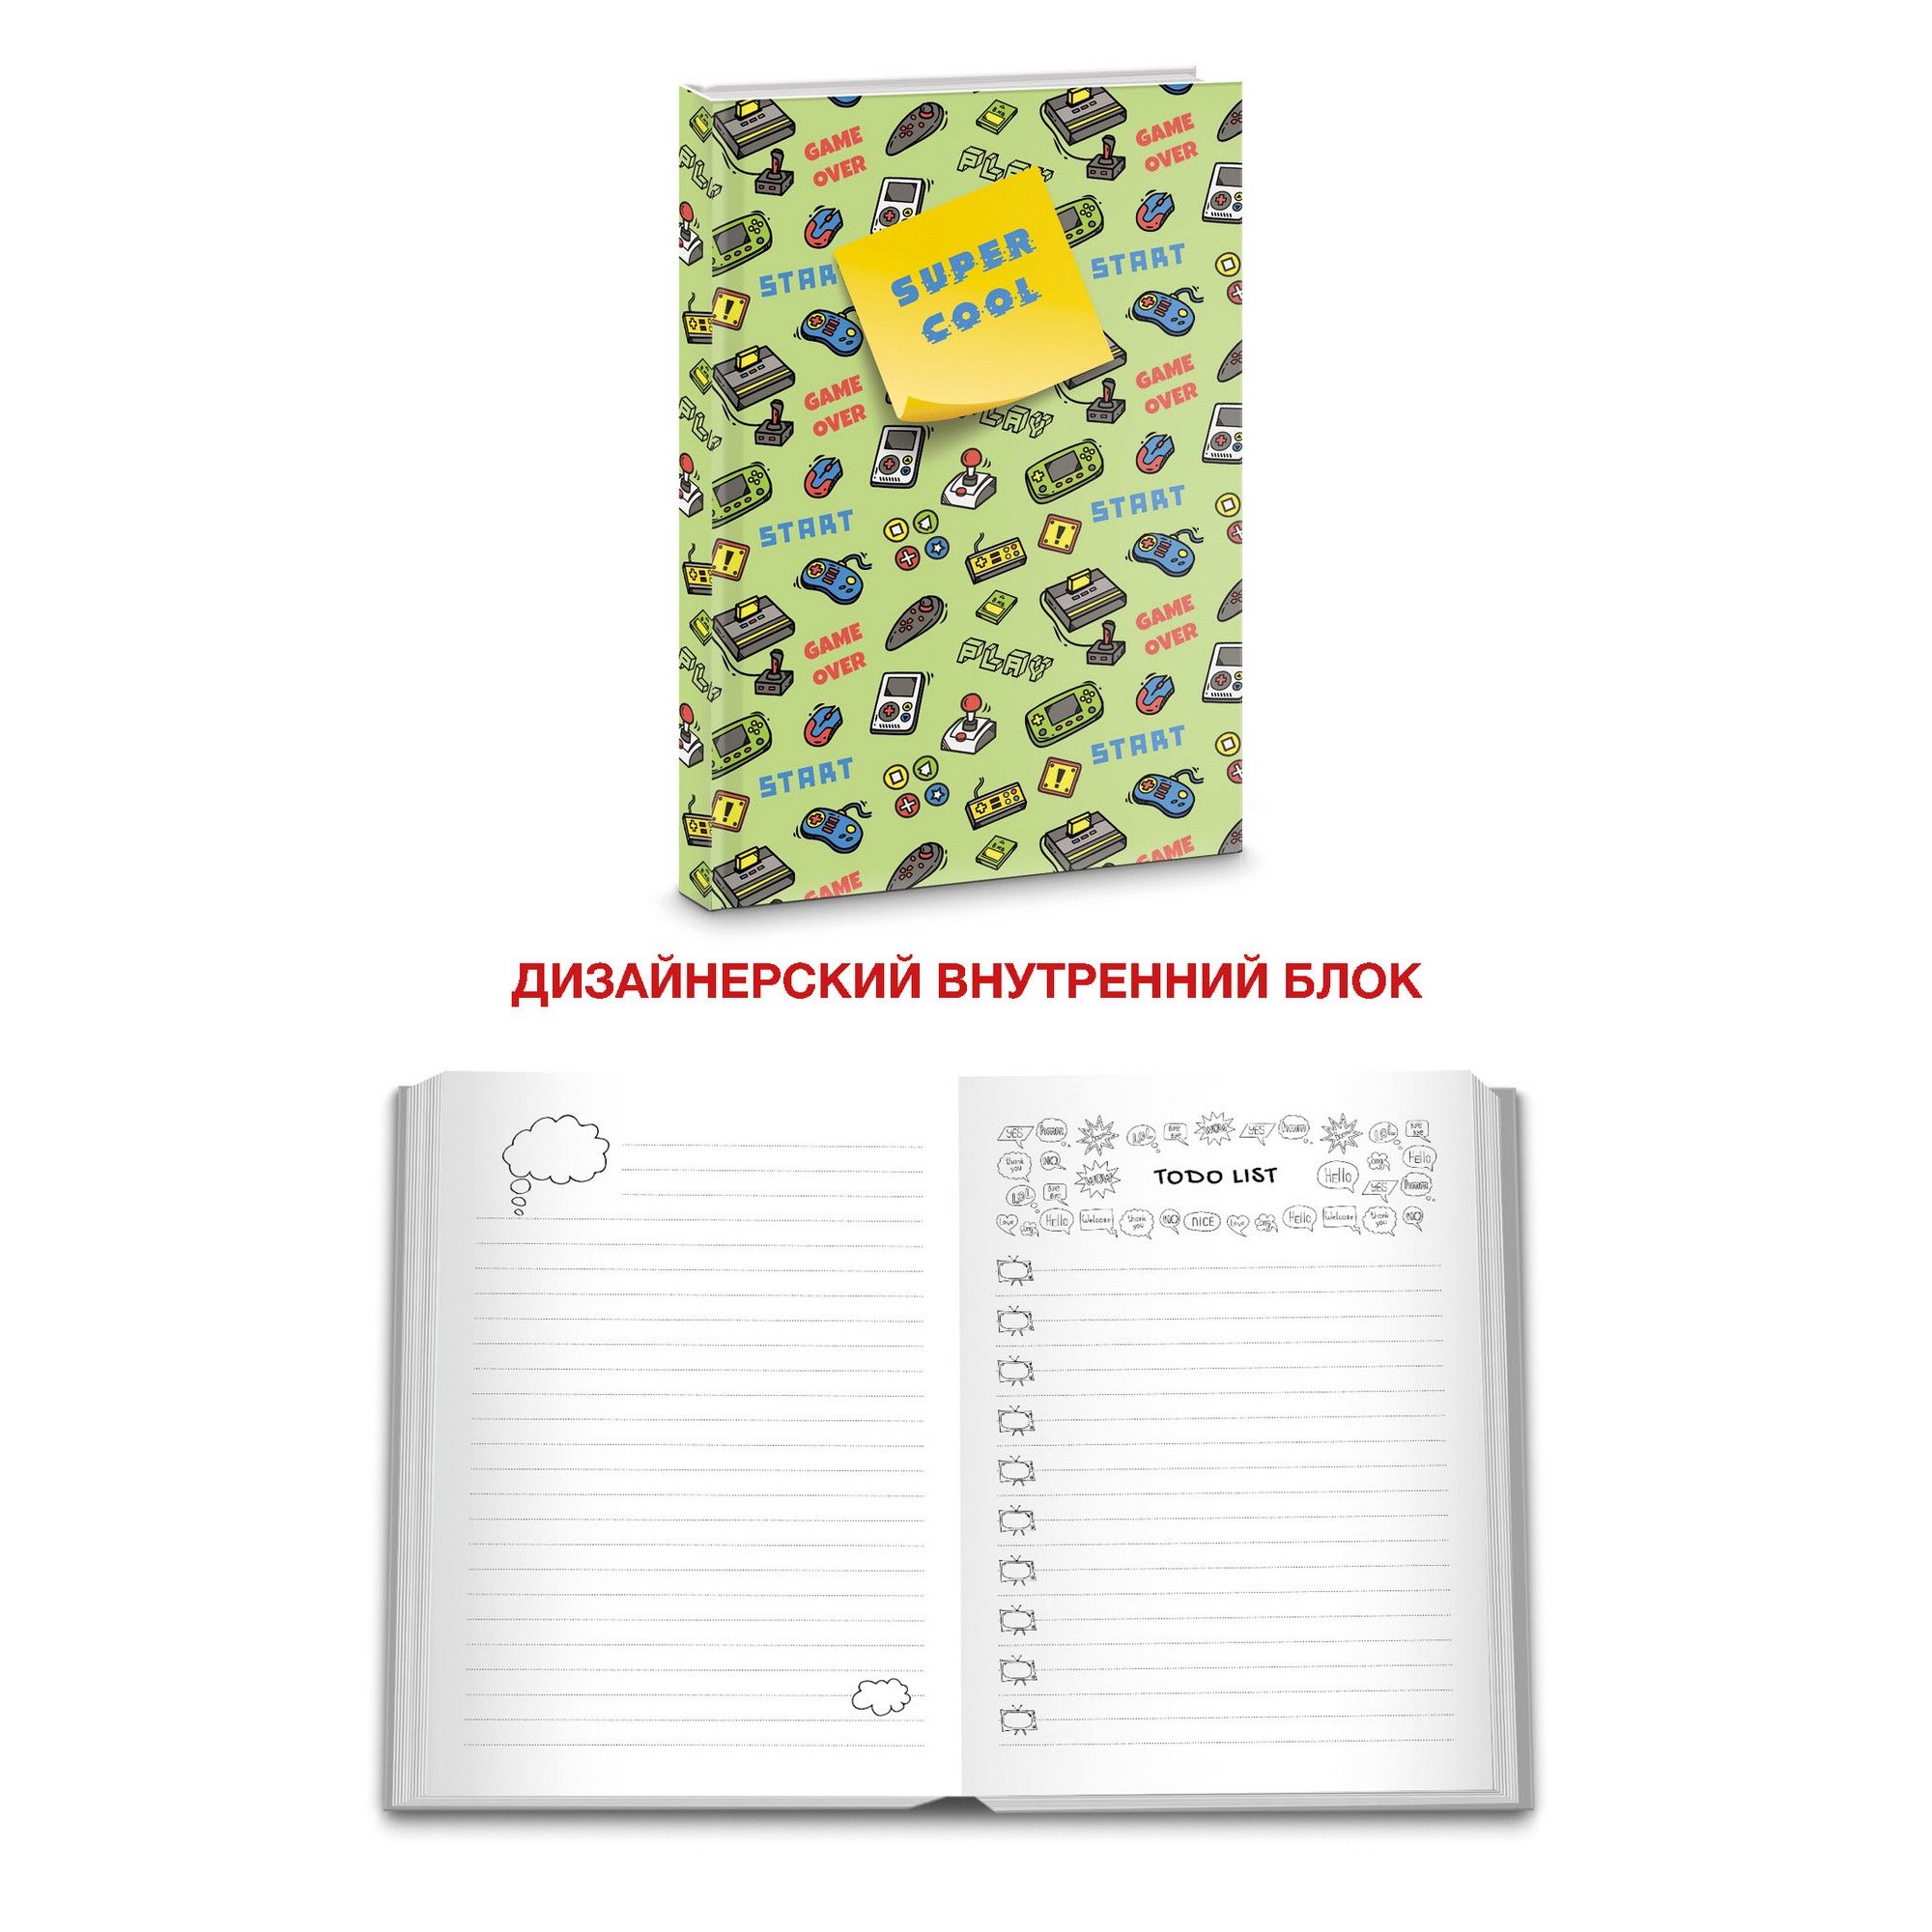 Книга для записей А5 100л Super Cool. Дизайн 2 - купить в магазине Кассандра, фото, 4606086413091, 